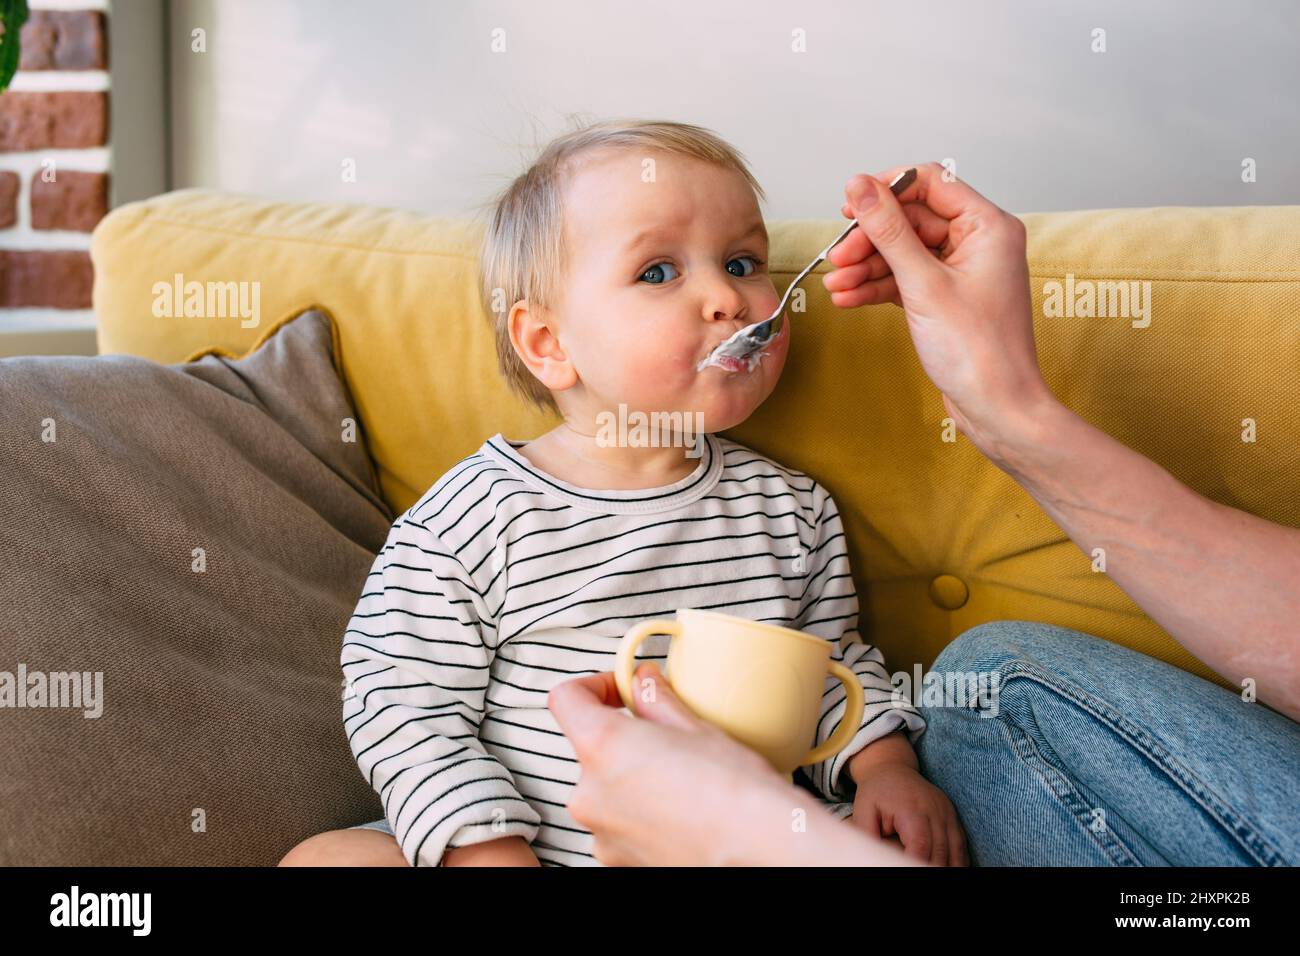 Maman nourrit un petit enfant à la maison avec du yaourt à la cuillère. Concept de famille Banque D'Images